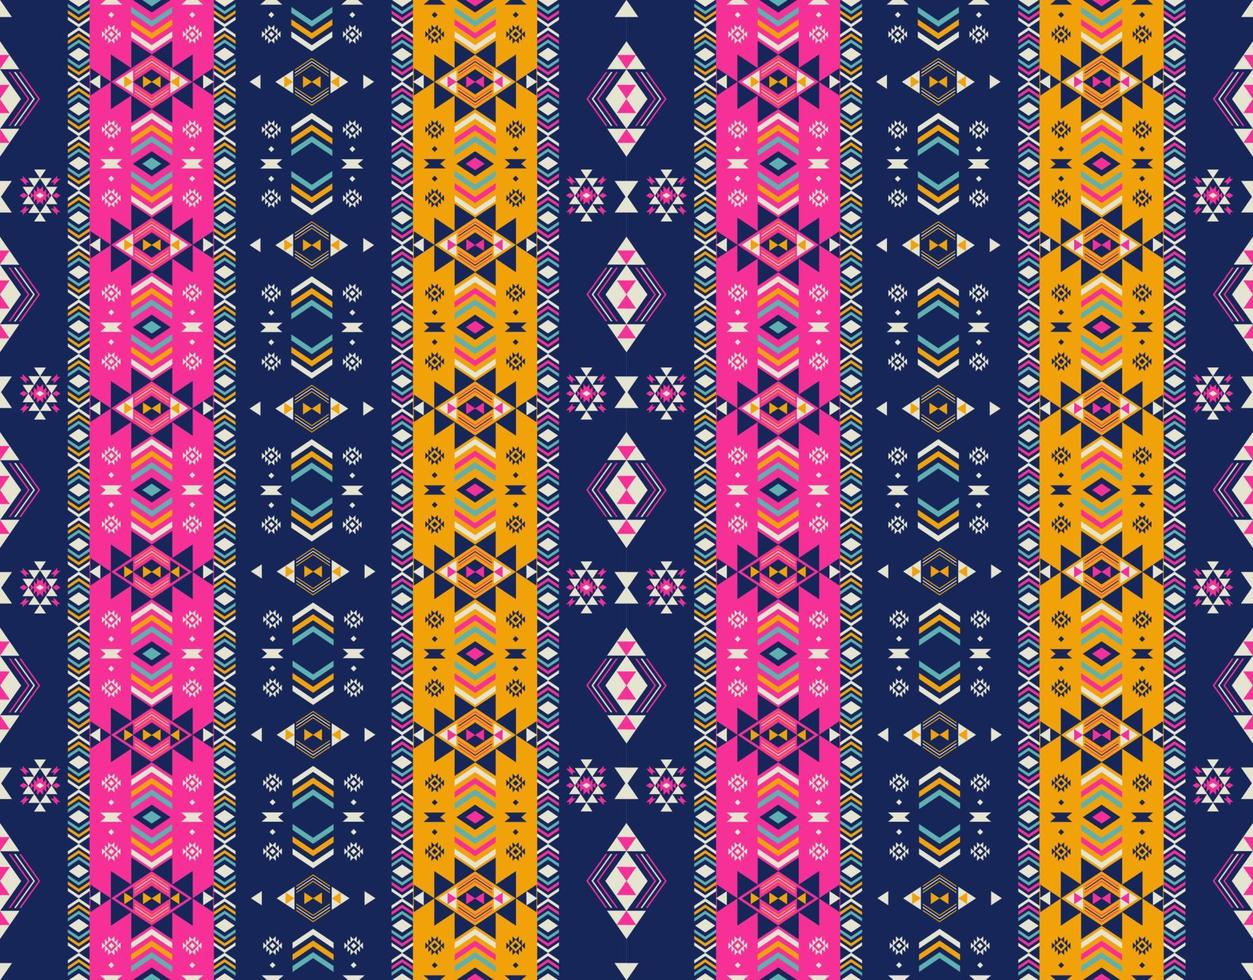 motif de rayures colorées ethniques aztèques. rayures géométriques aztèques colorées du sud-ouest ethnique sans soudure de fond. utiliser pour le tissu, les éléments de décoration intérieure ethnique, le rembourrage, l'emballage. vecteur